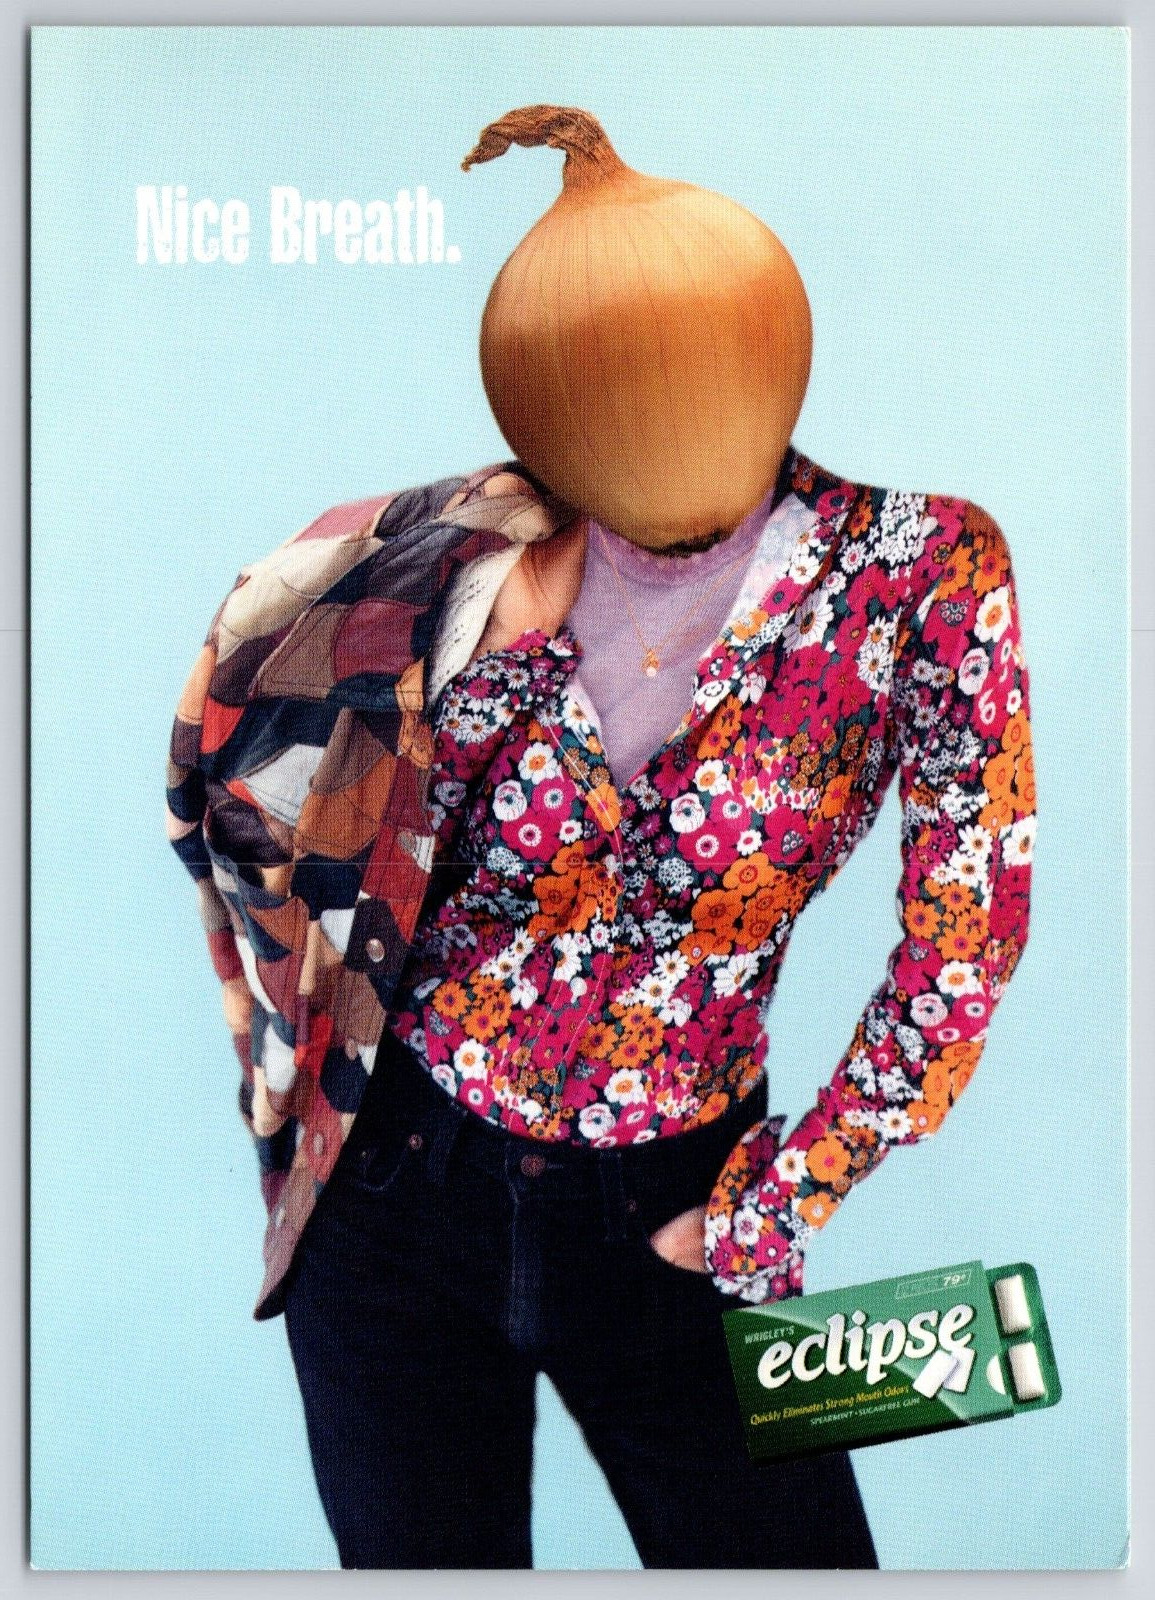 Groovy Dressed Onion Head Bad Breath Girl Eclipse Sugar Free Gum Ad Postcard